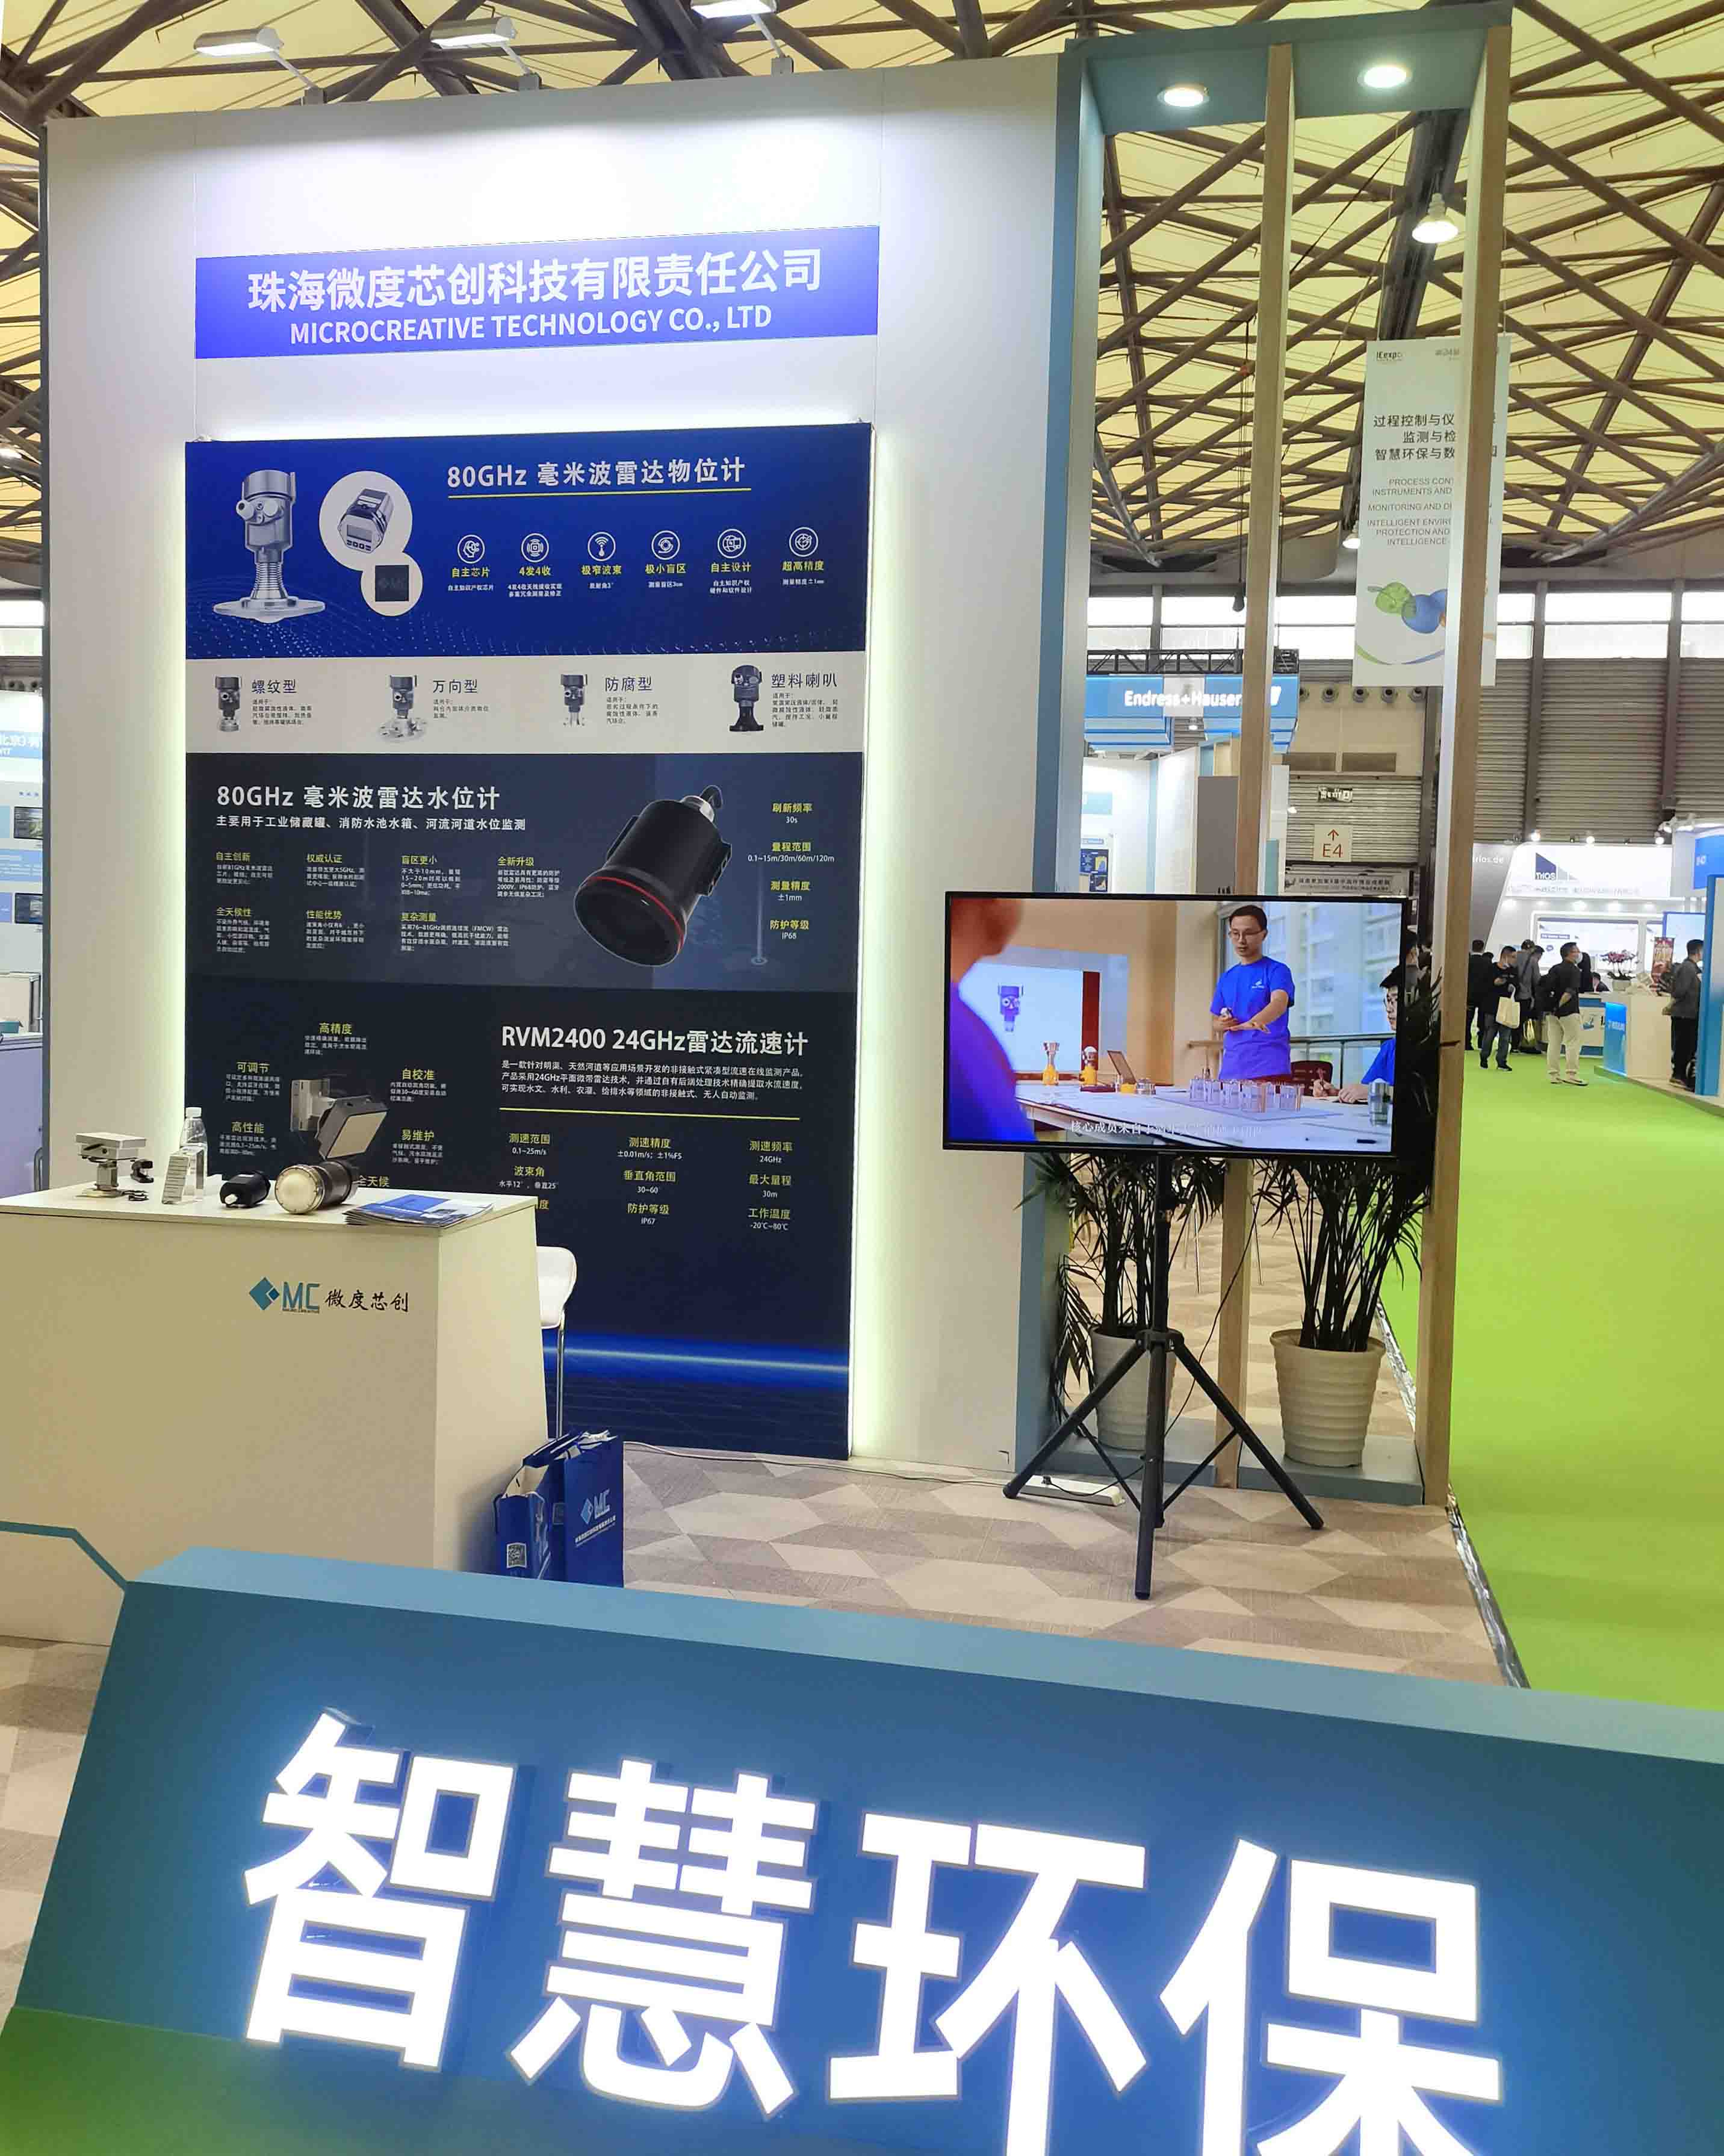 365体育投注网页版携带新型毫米波流速雷达和毫米波工业雷达产品亮相第24届中国环博会